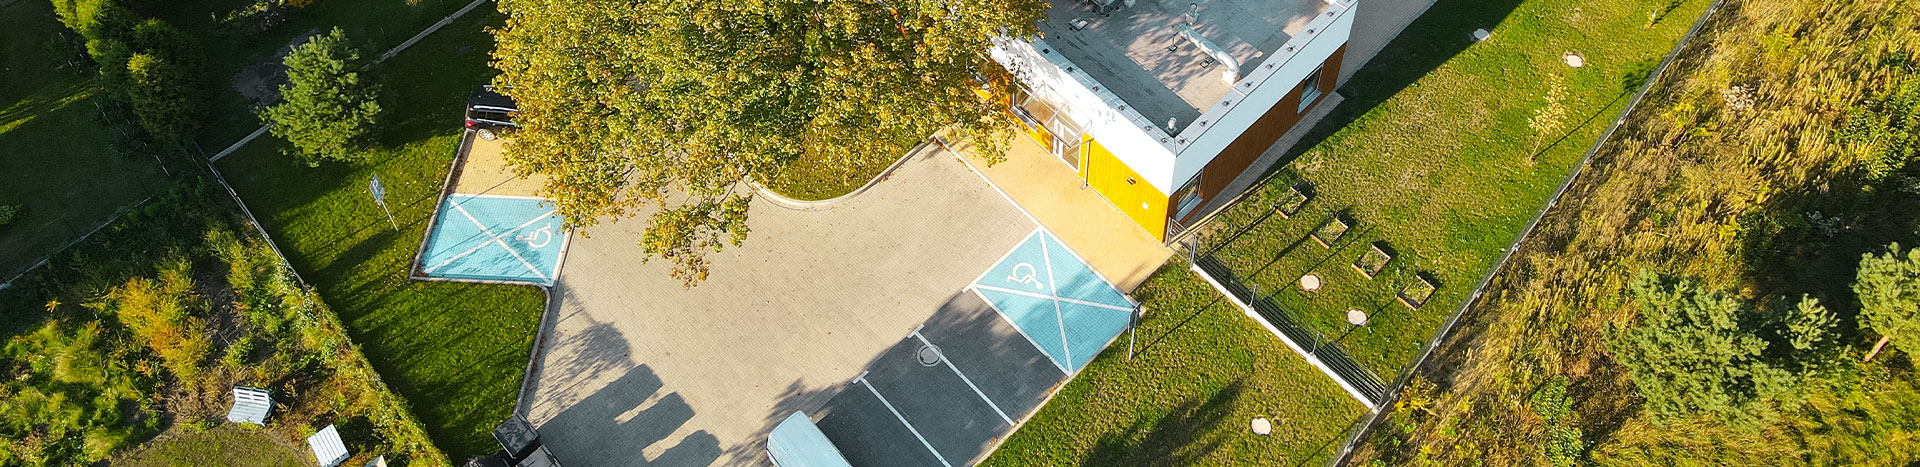 Fotografia z lotu ptaka przedstawia nowoczesne, parterowe przedszkole.